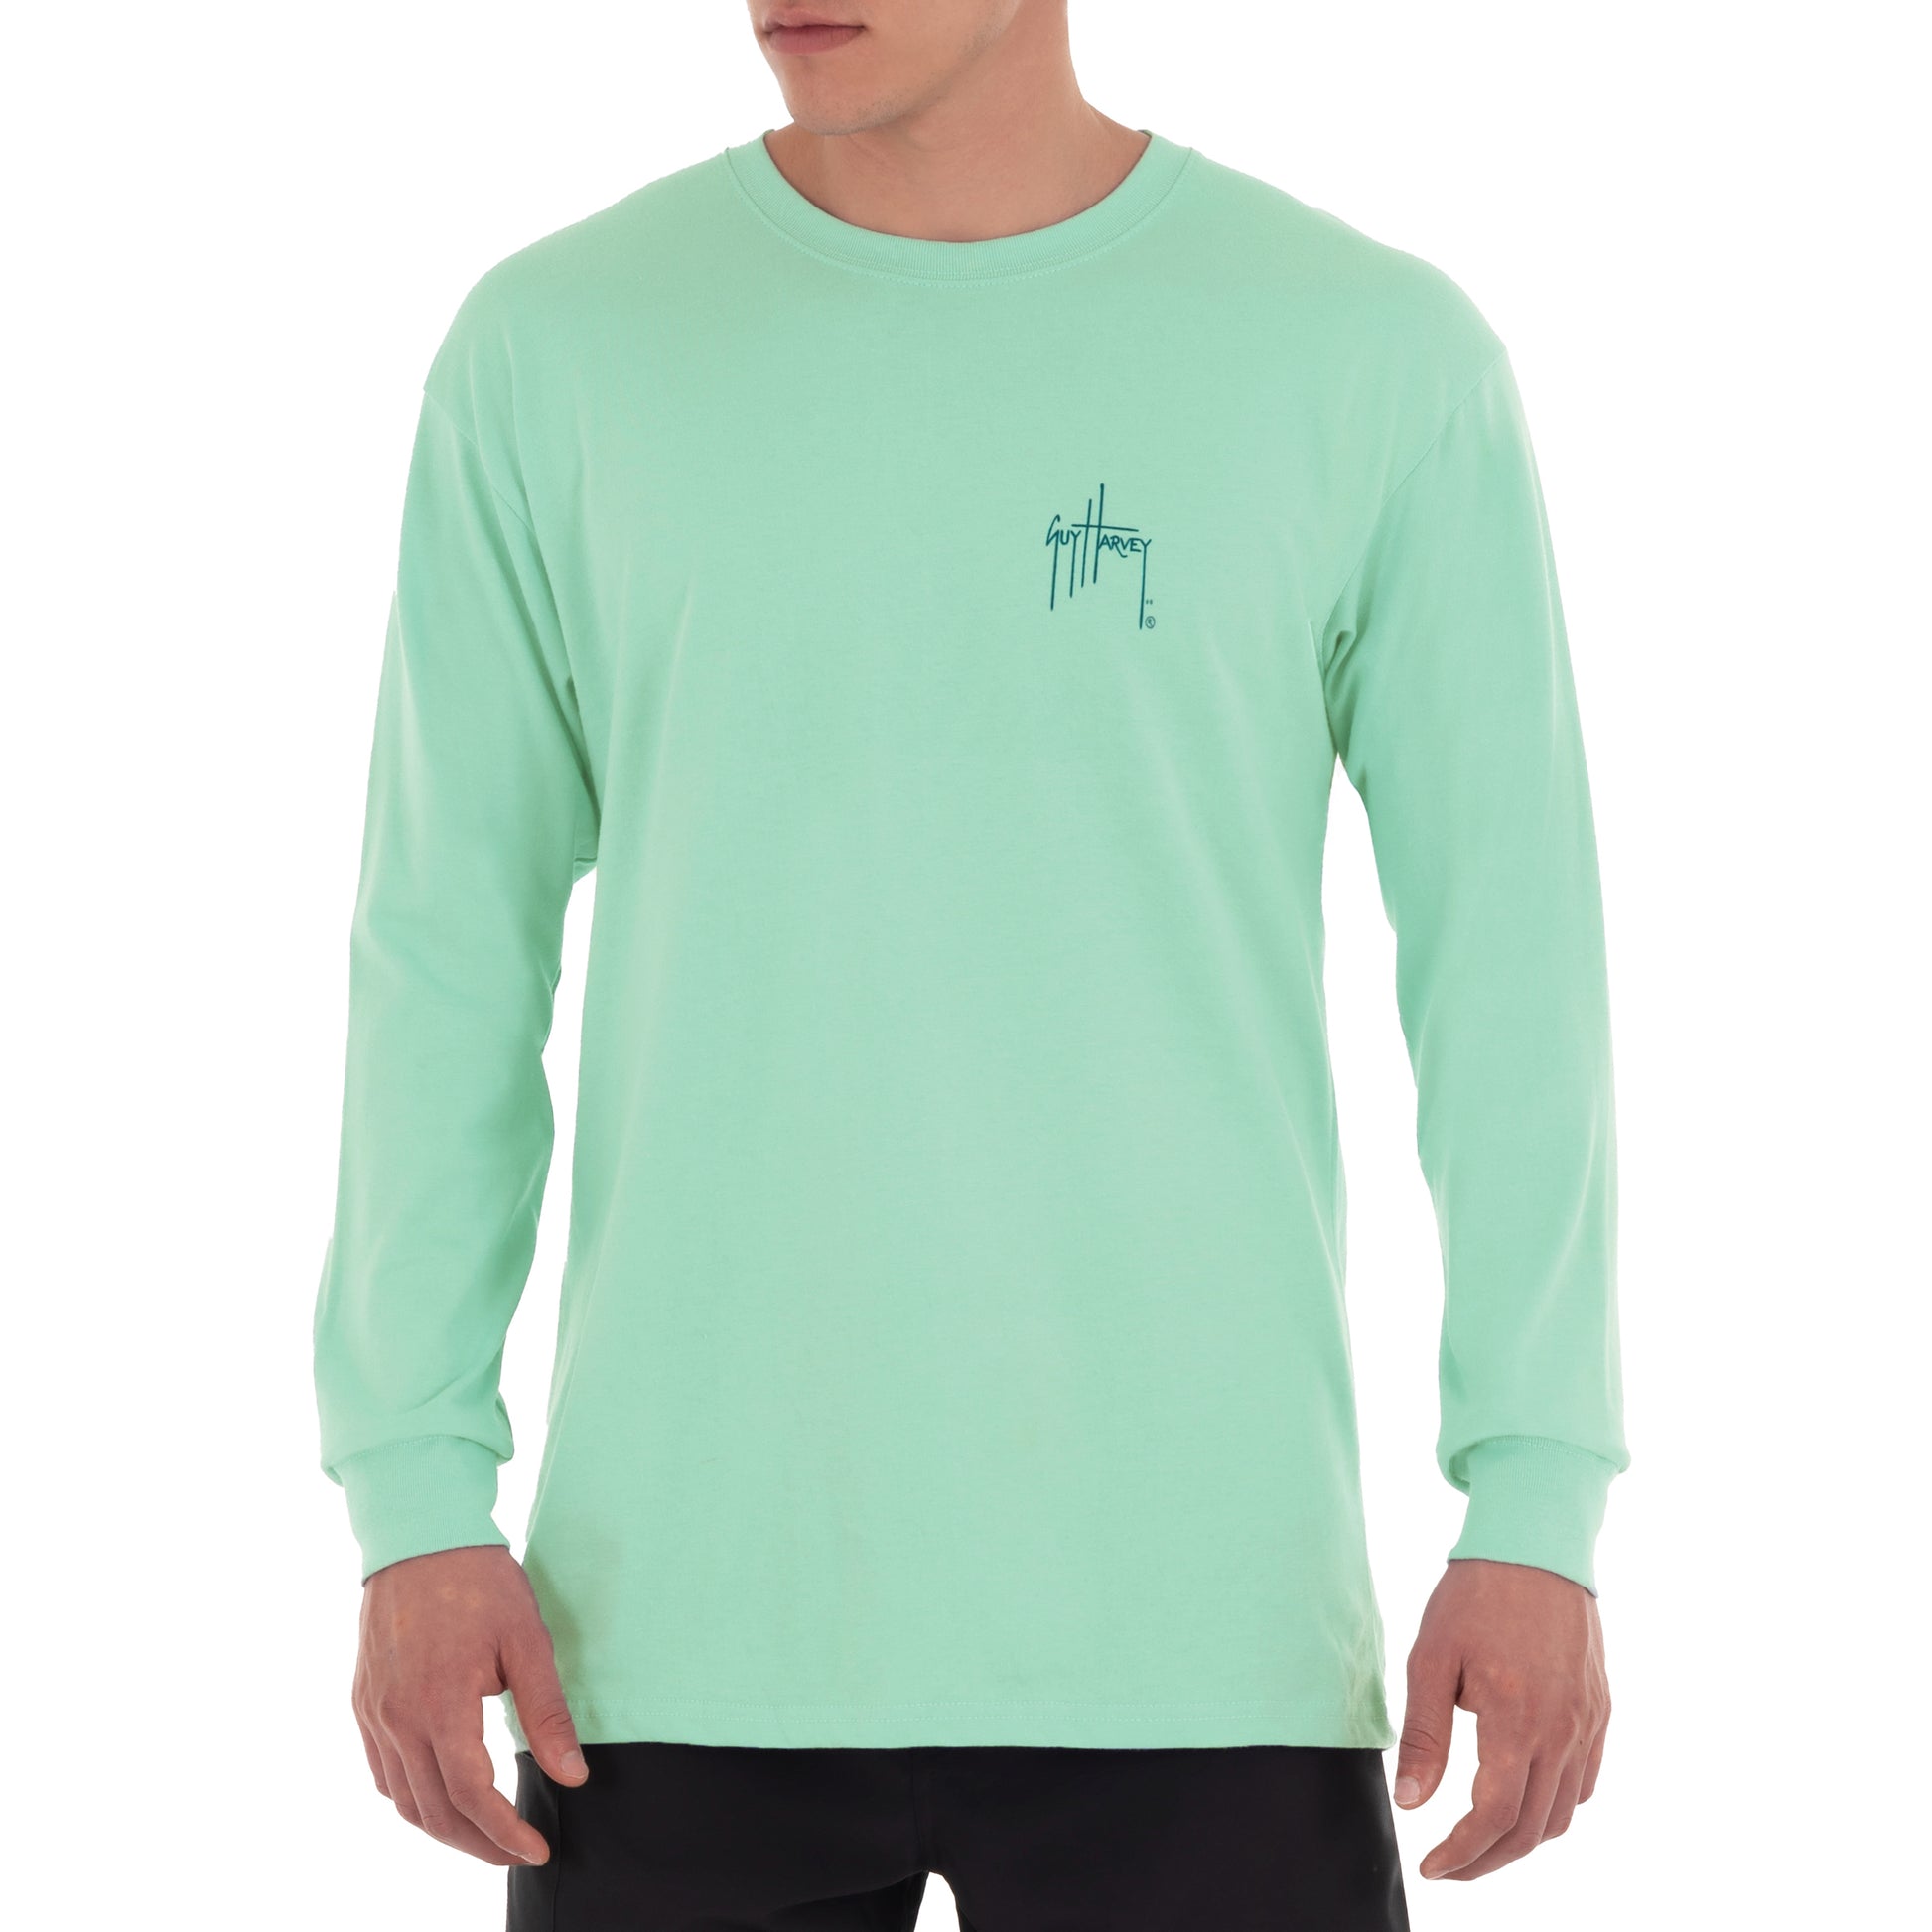 Men's Dorado Inside Flip Long Sleeve Green T-Shirt View 2